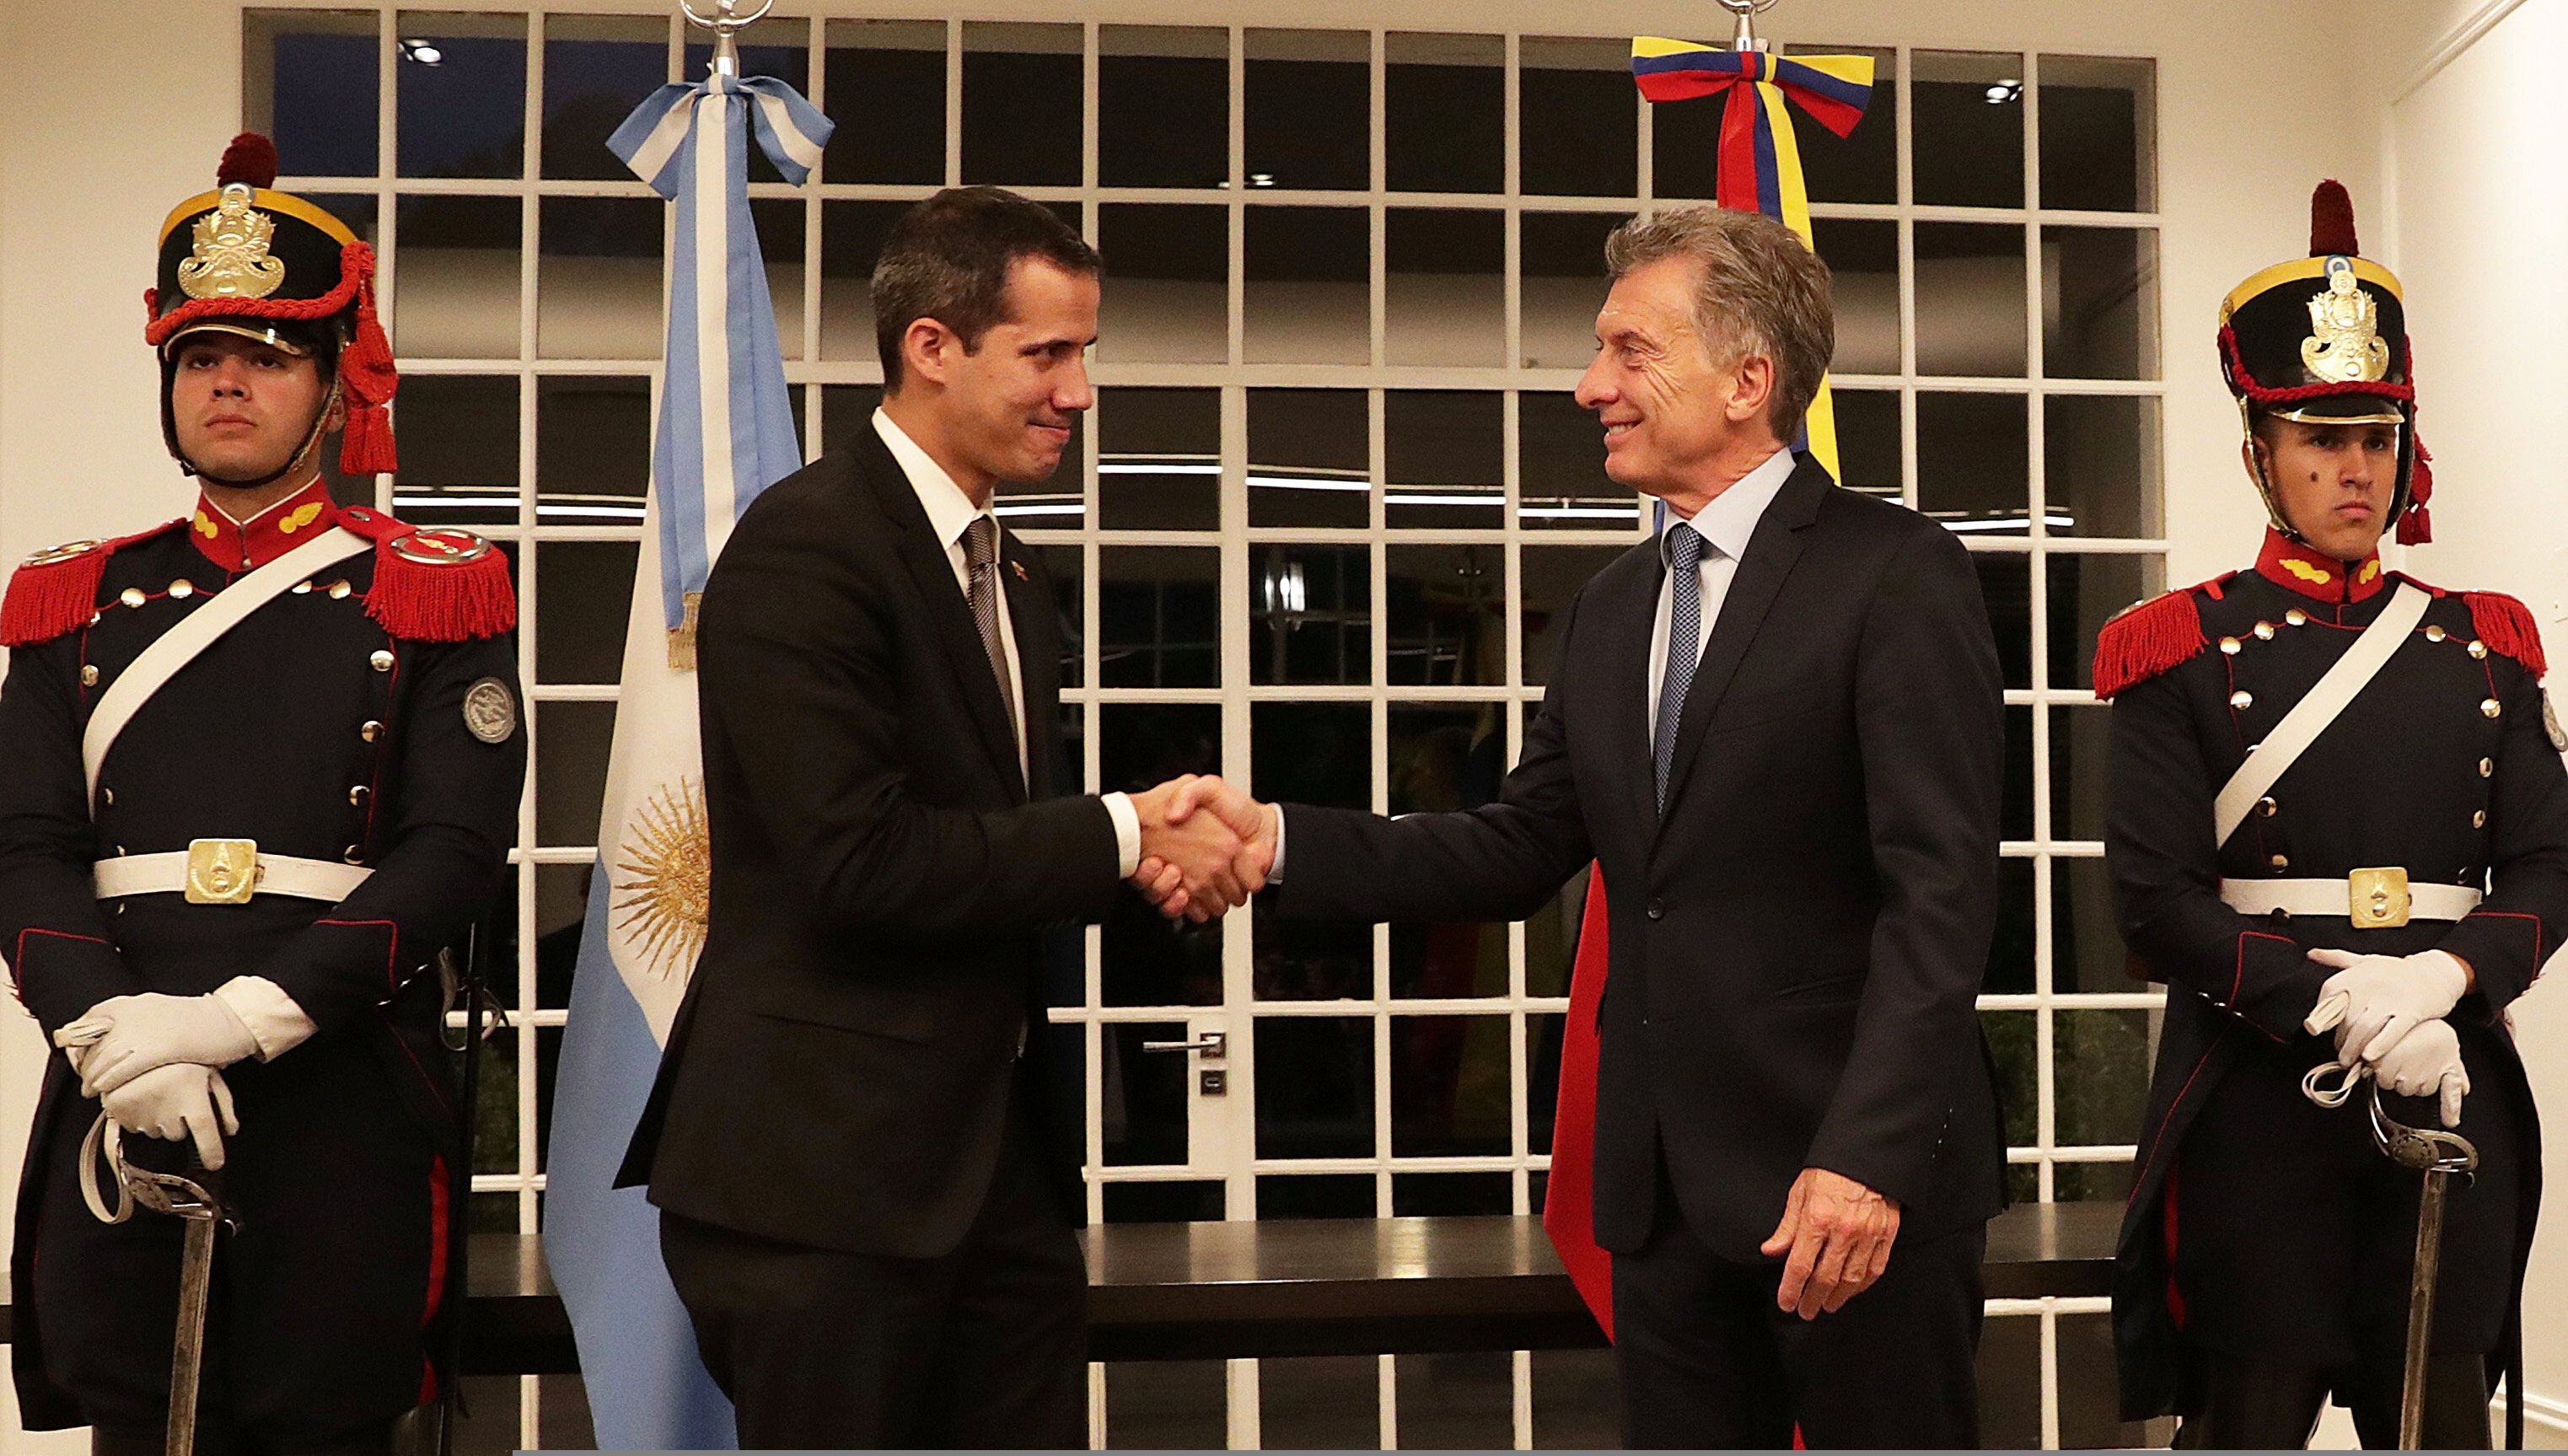 El presidente argentino Macri recibió a Guaidó en marzo (Presidencia argentina via REUTERS)